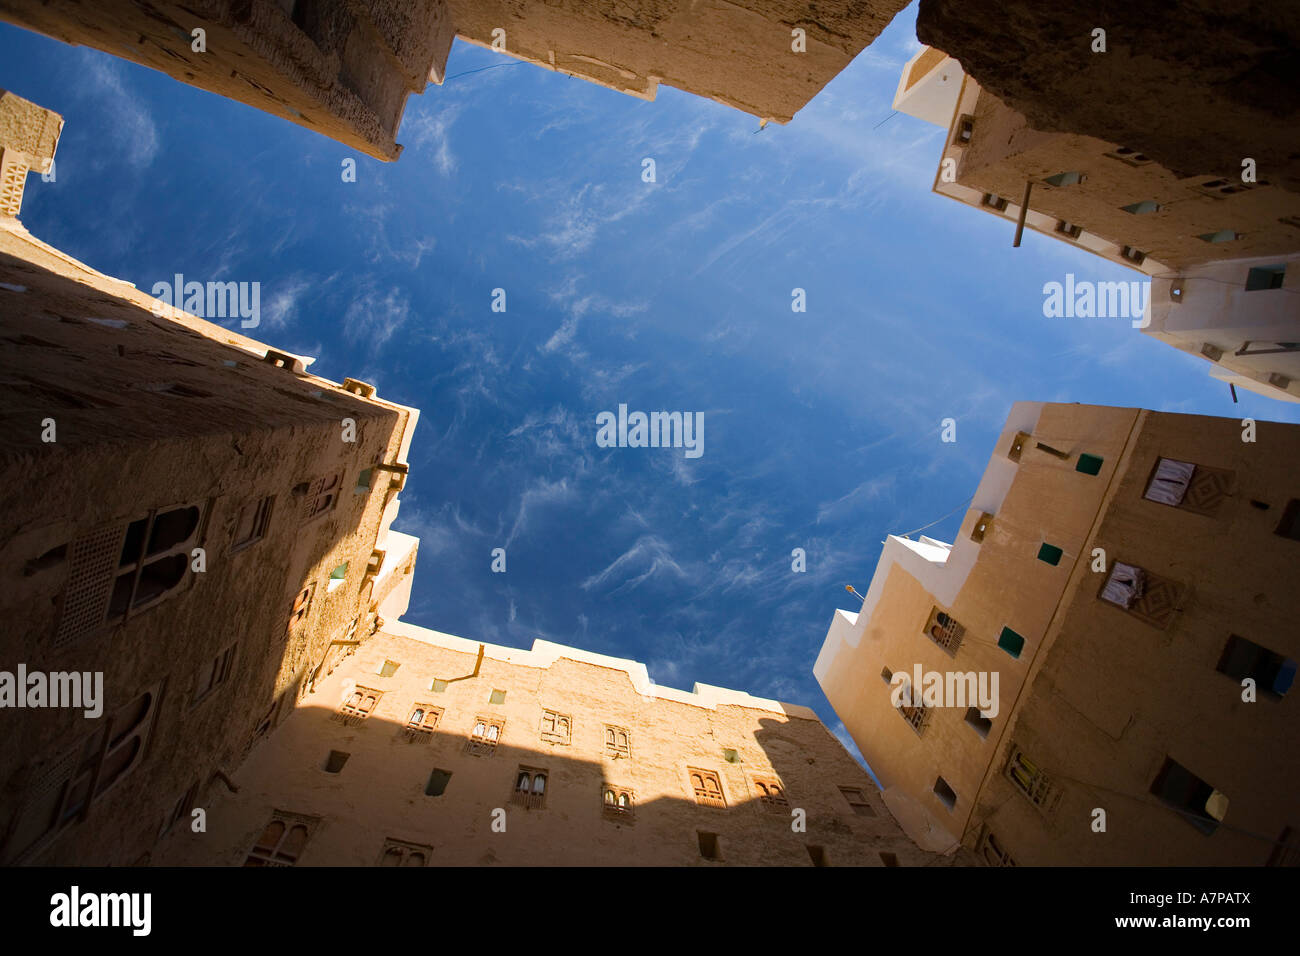 Shibam (Unesco World Heritage City), Wadi Hadramaut, Seiyun District, Yemen Stock Photo